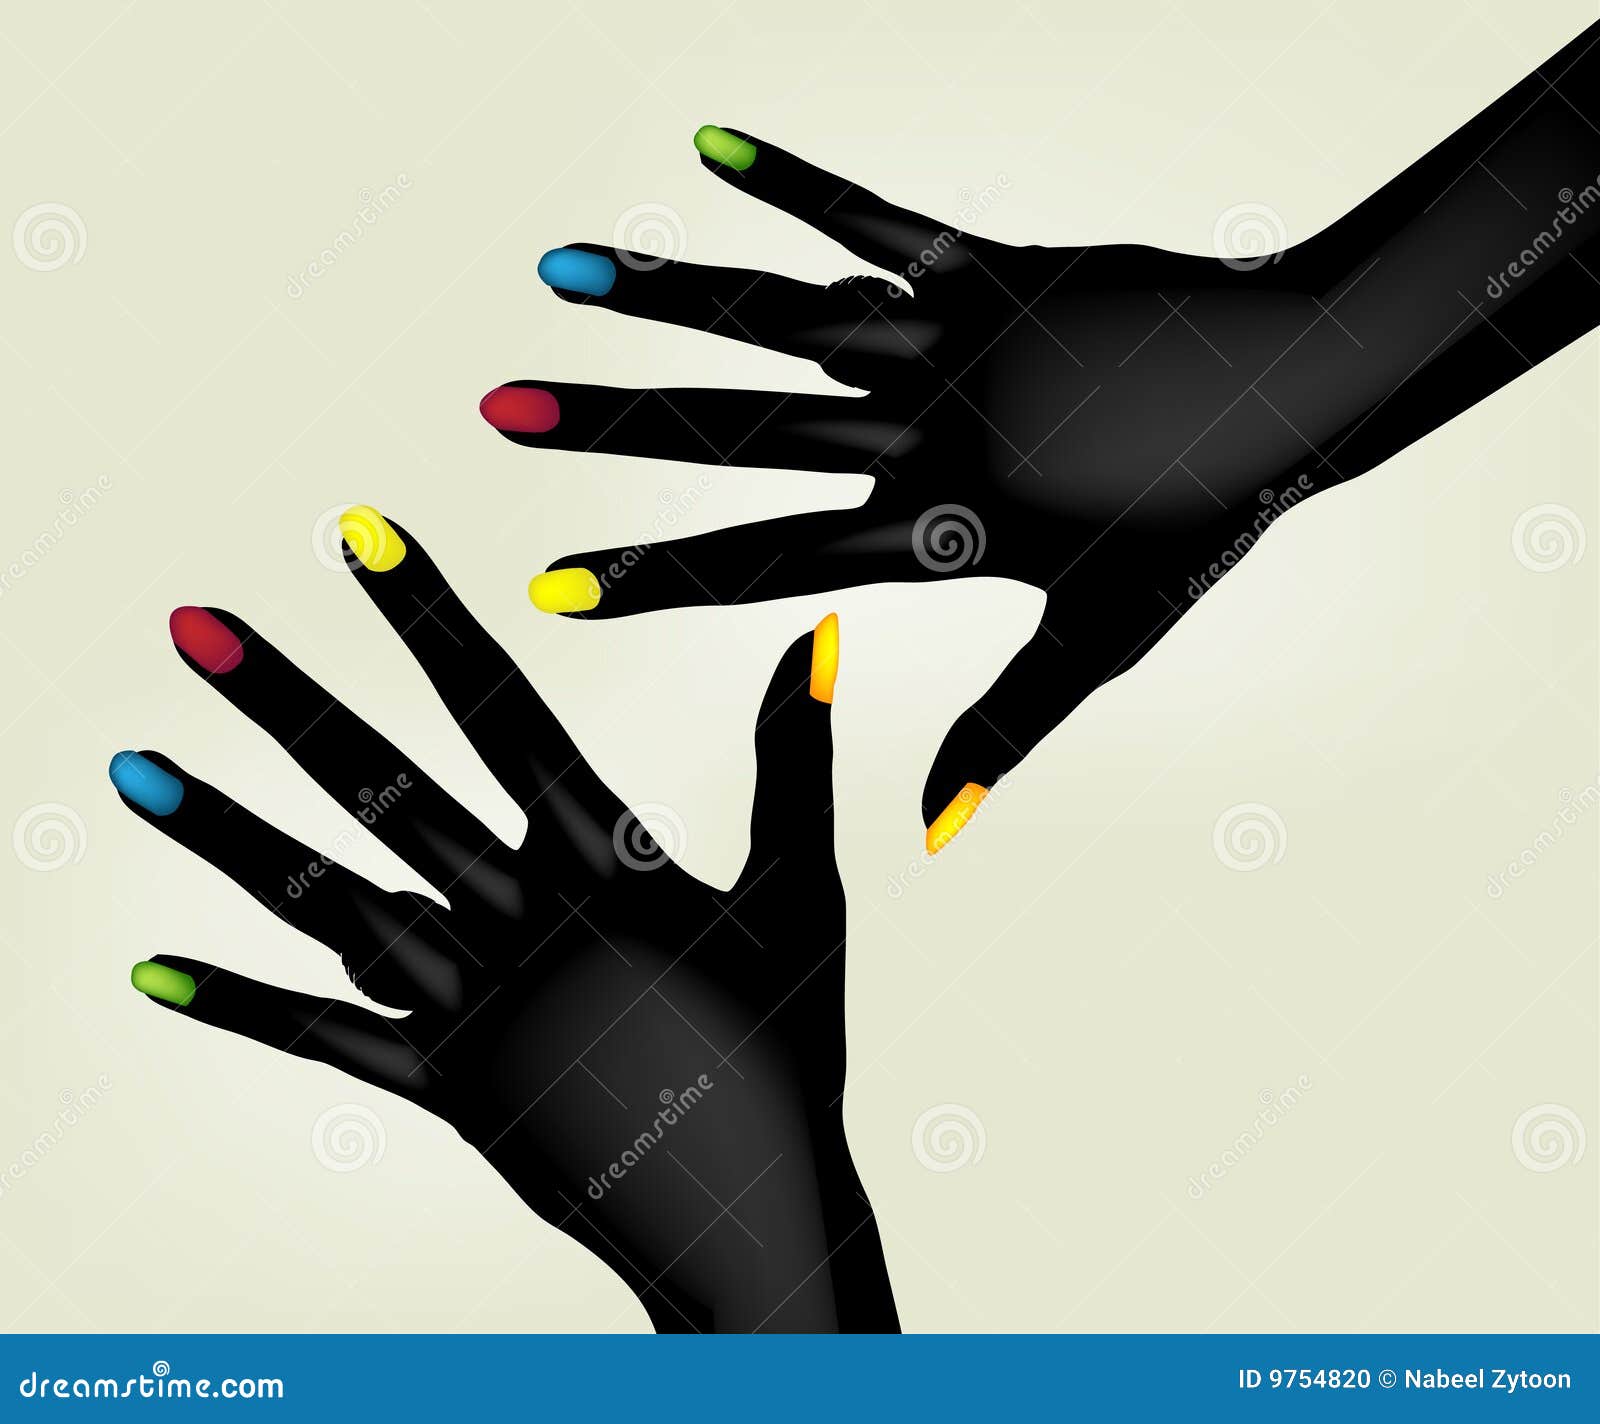 colorful fingernails